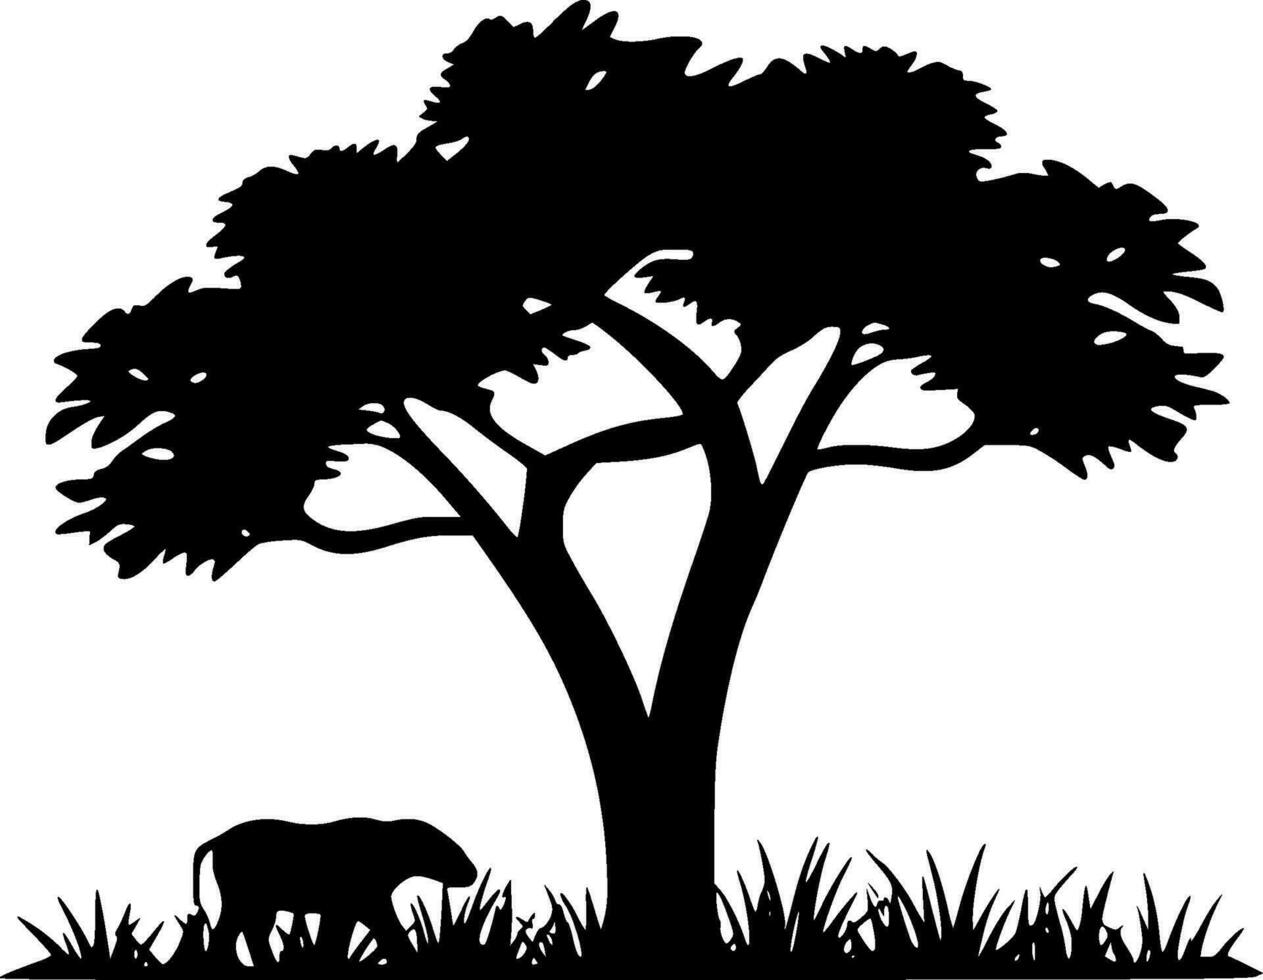 afrika - minimalistisk och platt logotyp - vektor illustration